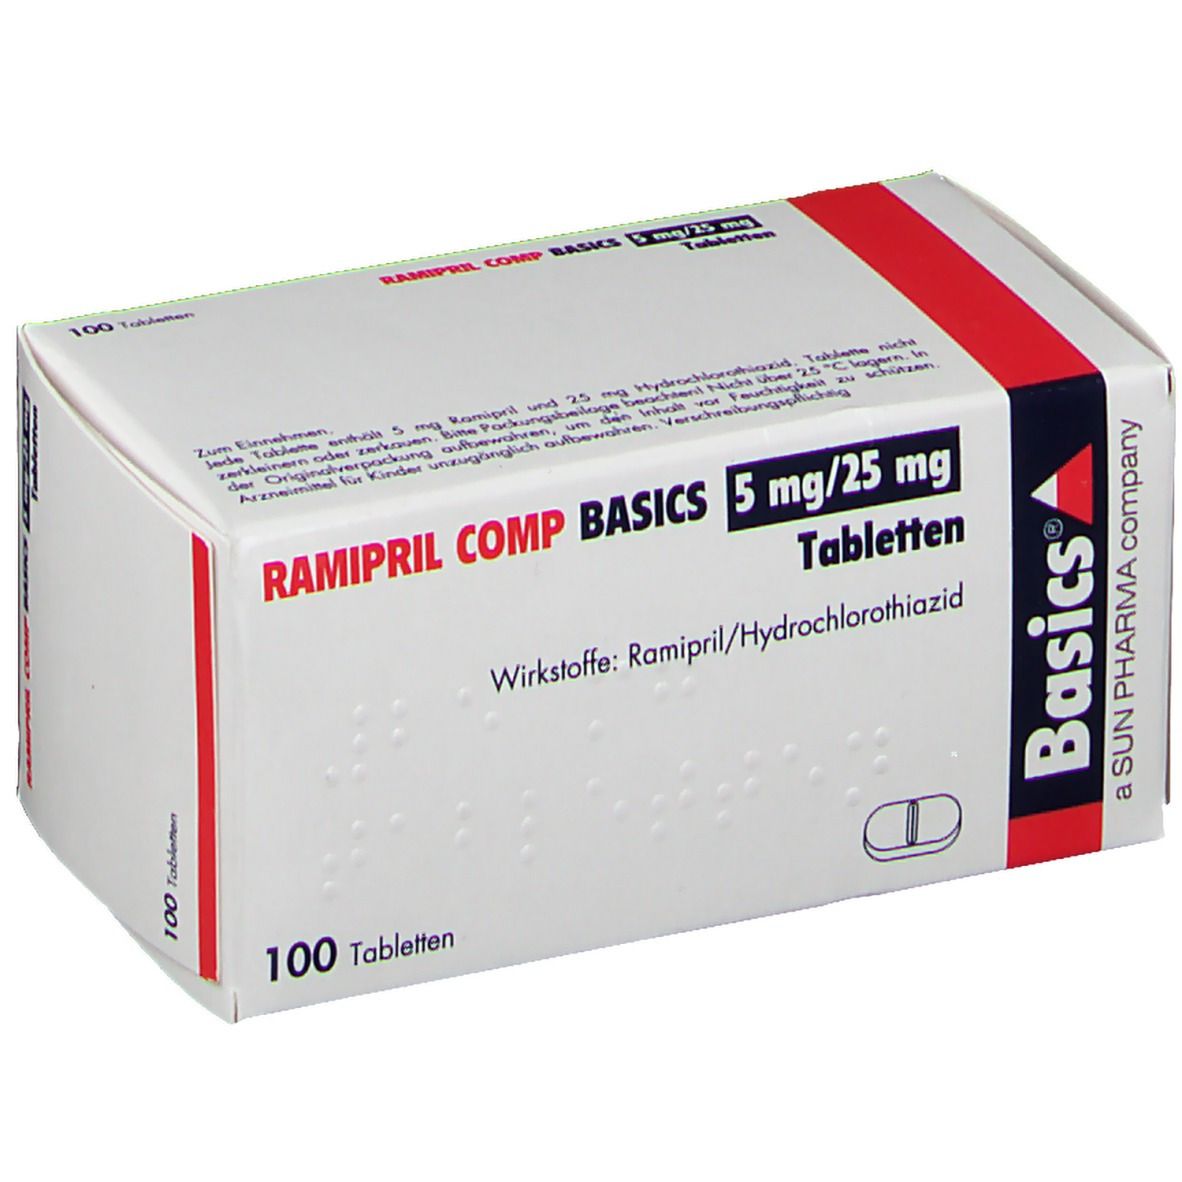 RAMIPRIL COMP BASICS 5 mg/25 mg